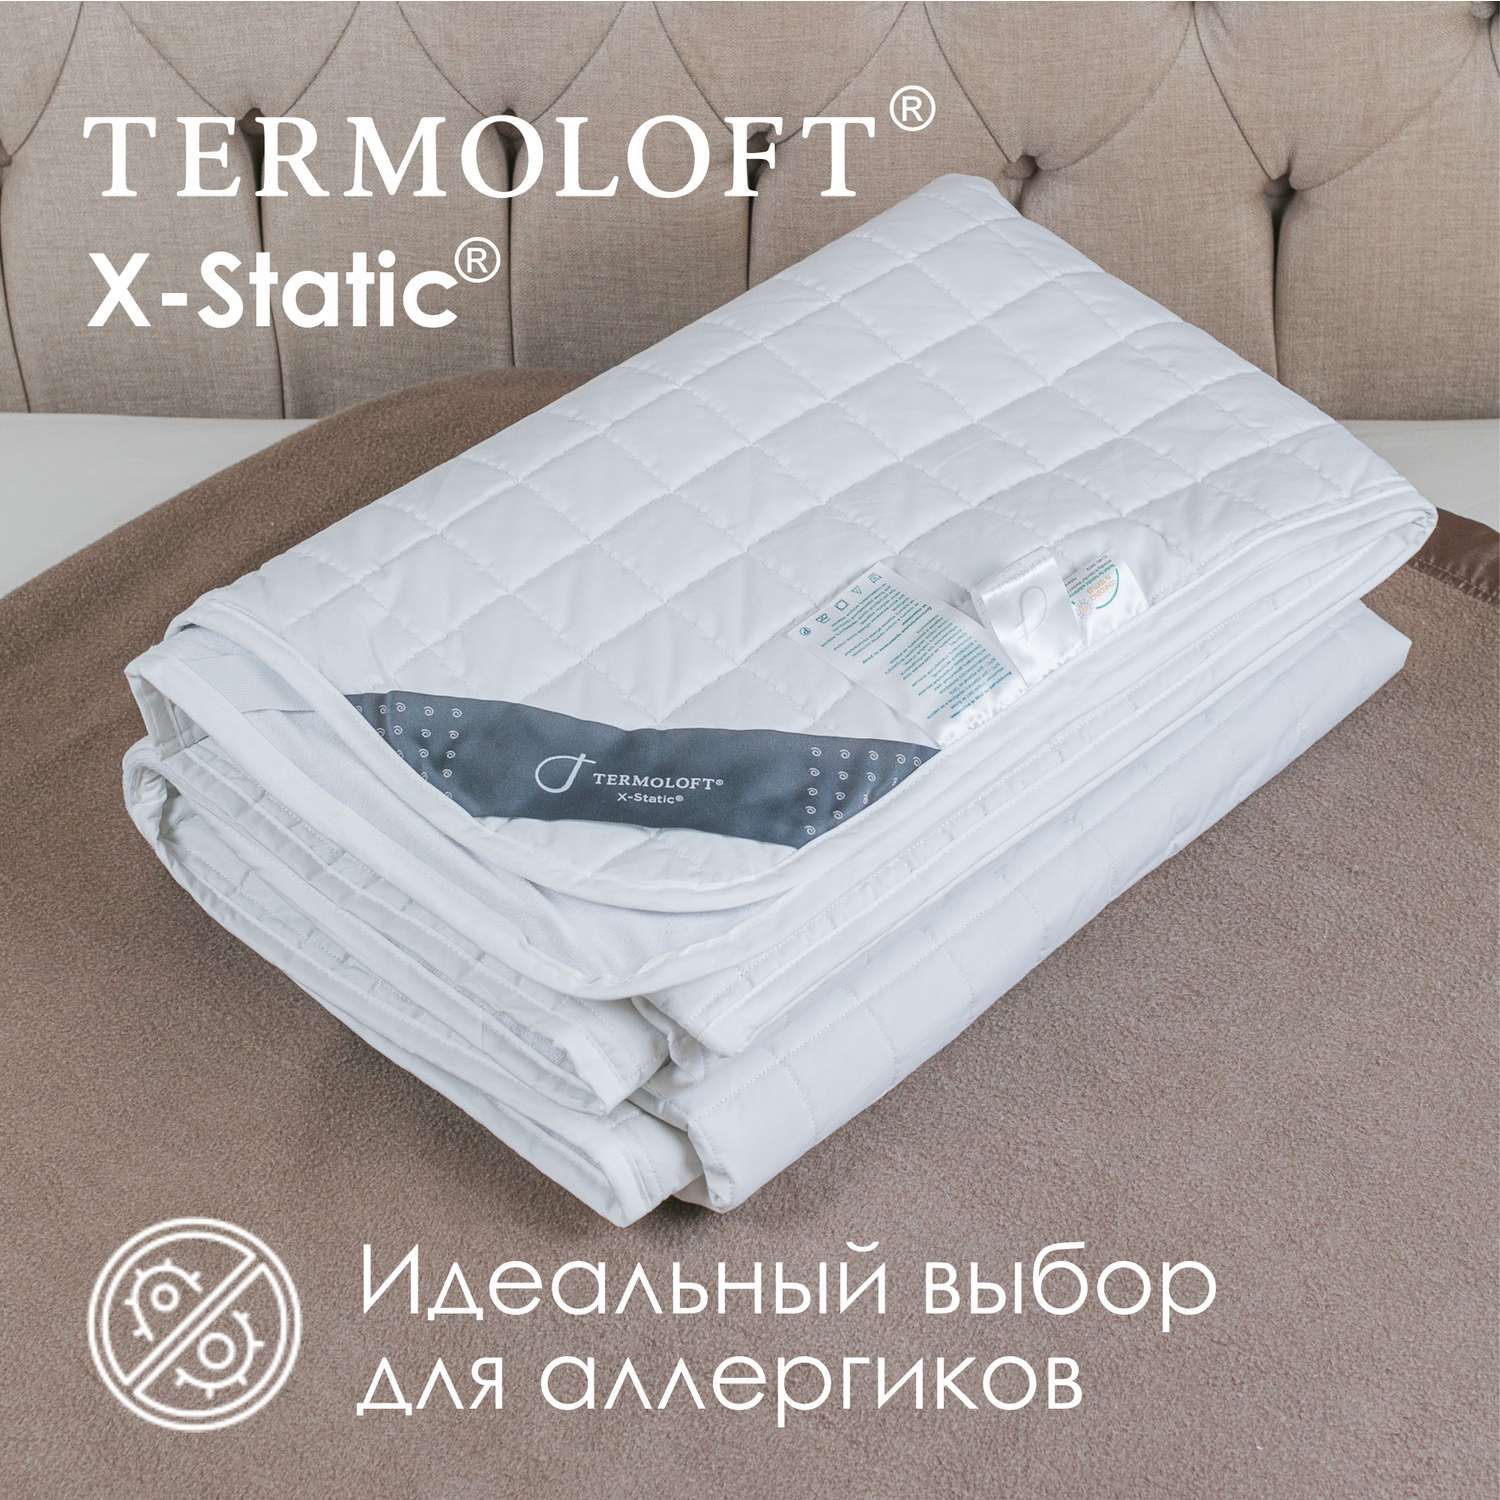 Наматрасник Termoloft X-Static с волокнами серебра 90х200 - фото 5